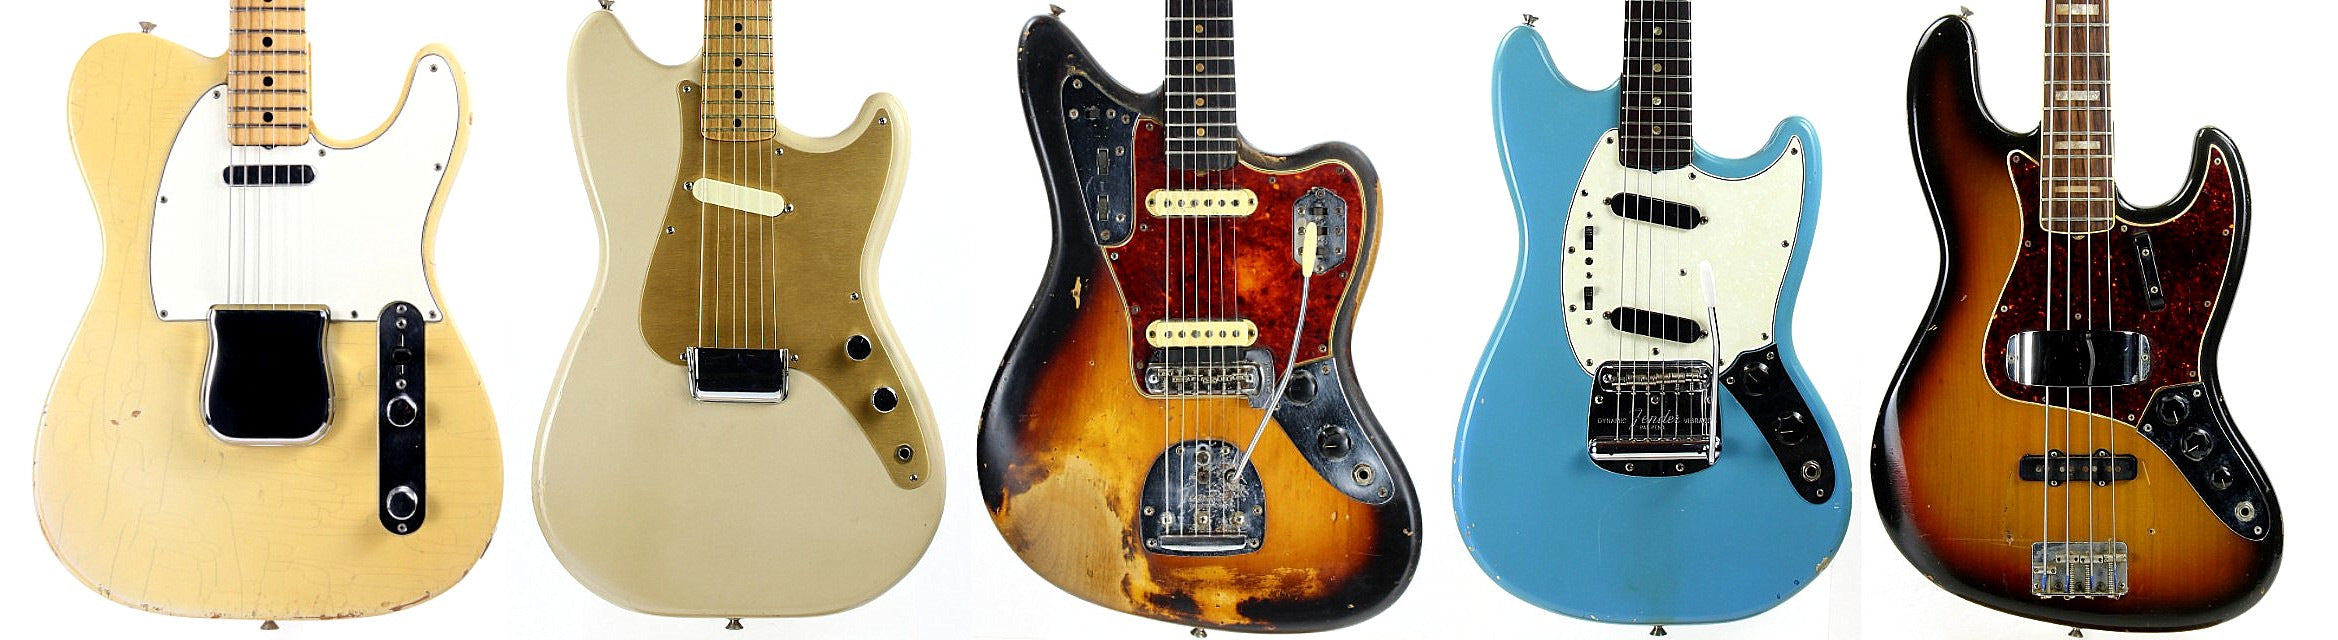 Vintage Fender guitars and basses banner